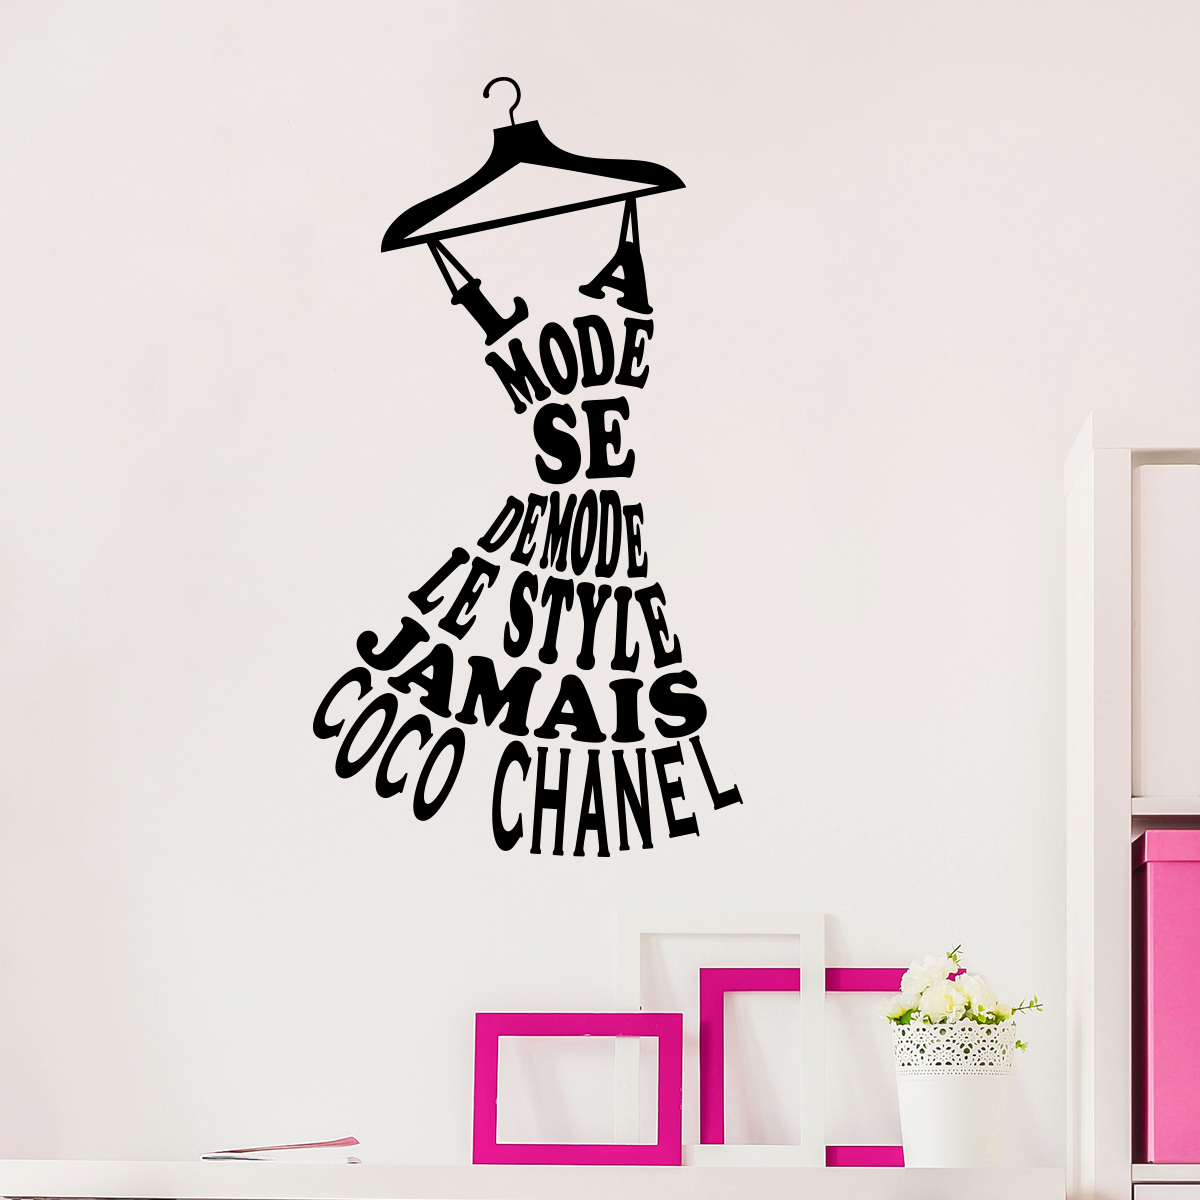 Wandtattoo La mode se démode le style jamais - Coco Chanel